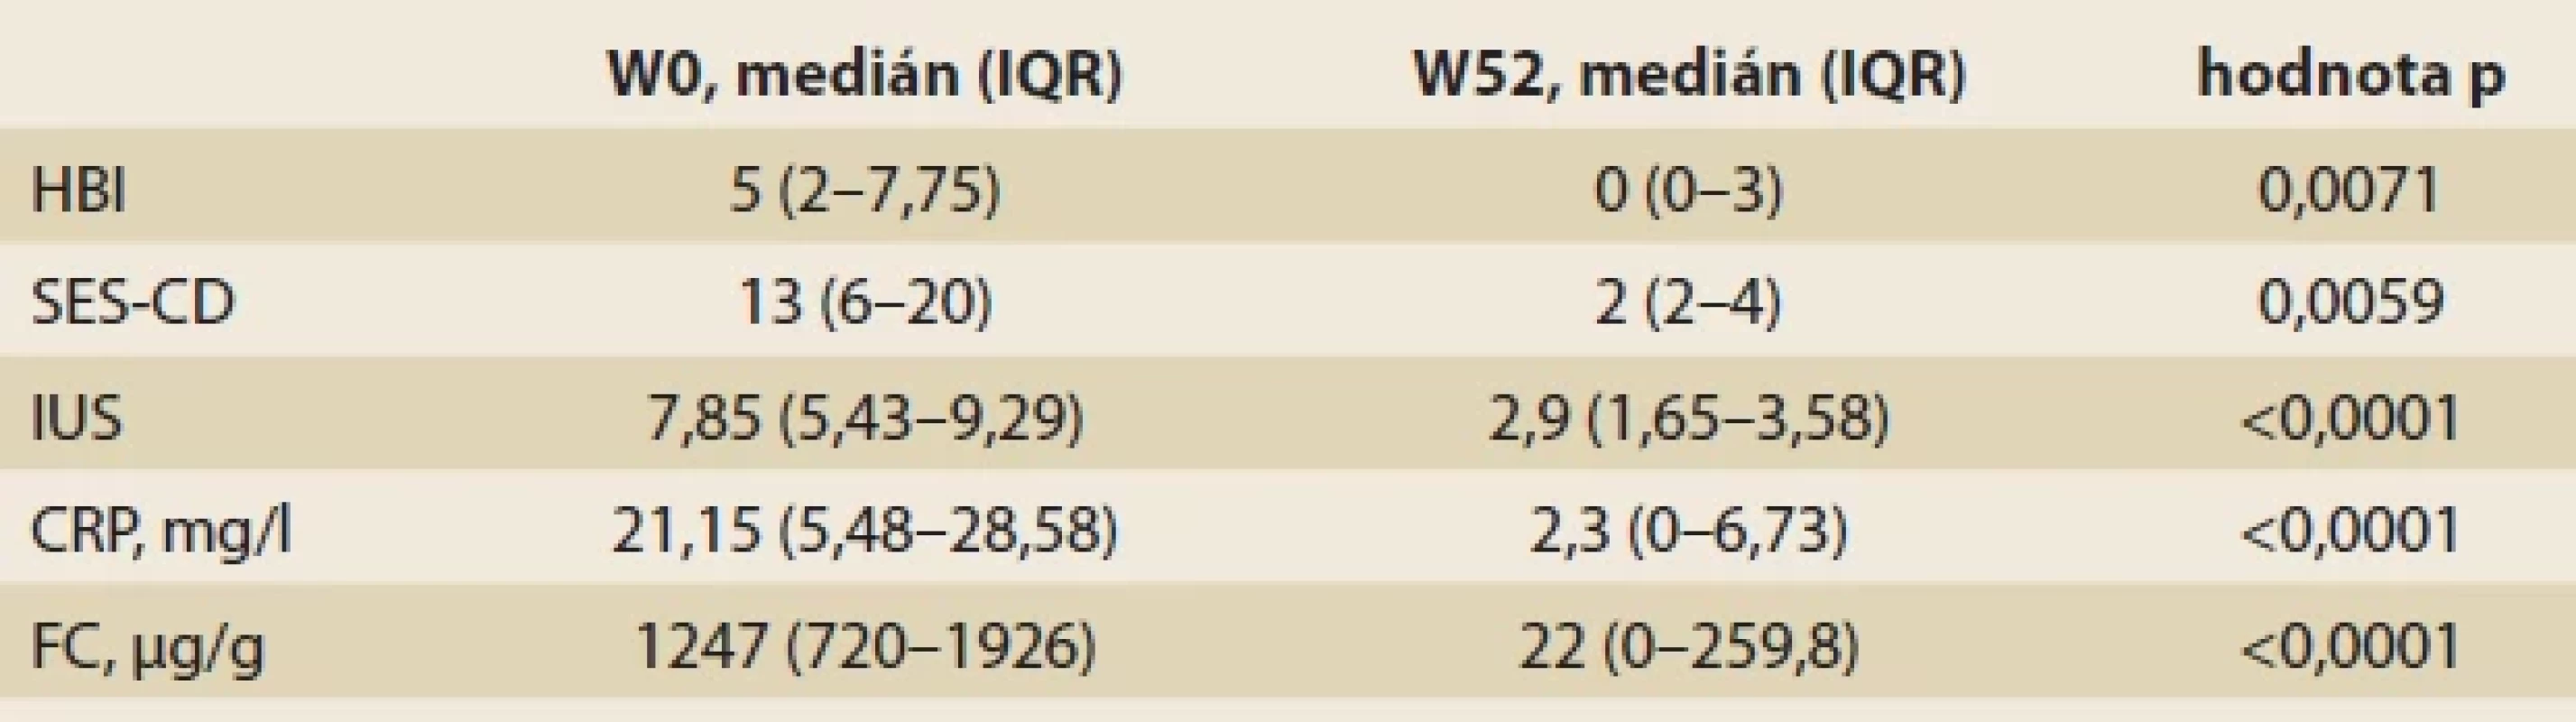 Klinické, zobrazovací a laboratorní markery CN u pacientů s klinickou odpovídavostí na léčbu IFX-SC v týdnu W52, n = 13.</br>Tab. 4. Clinical, imaging, and laboratory markers of CN in patients with clinical response to IFX-SC treatment at week W52, n = 13.